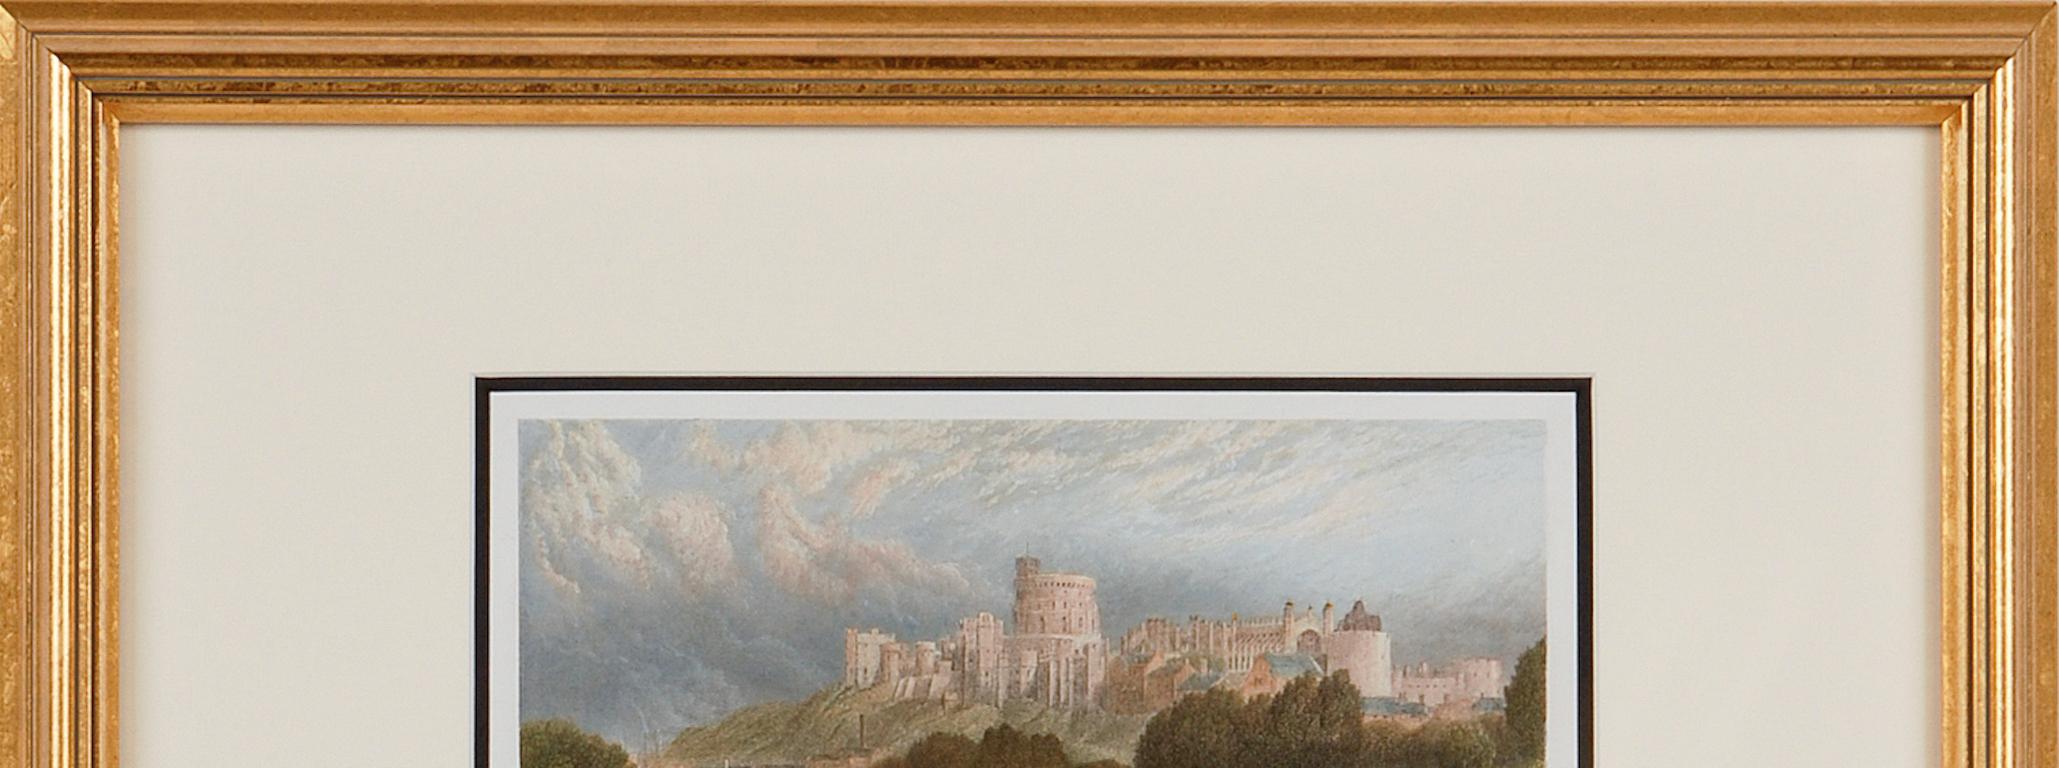 Windsor Castle: A Framed 19th C. Engraving After Myles Birket Foster 2